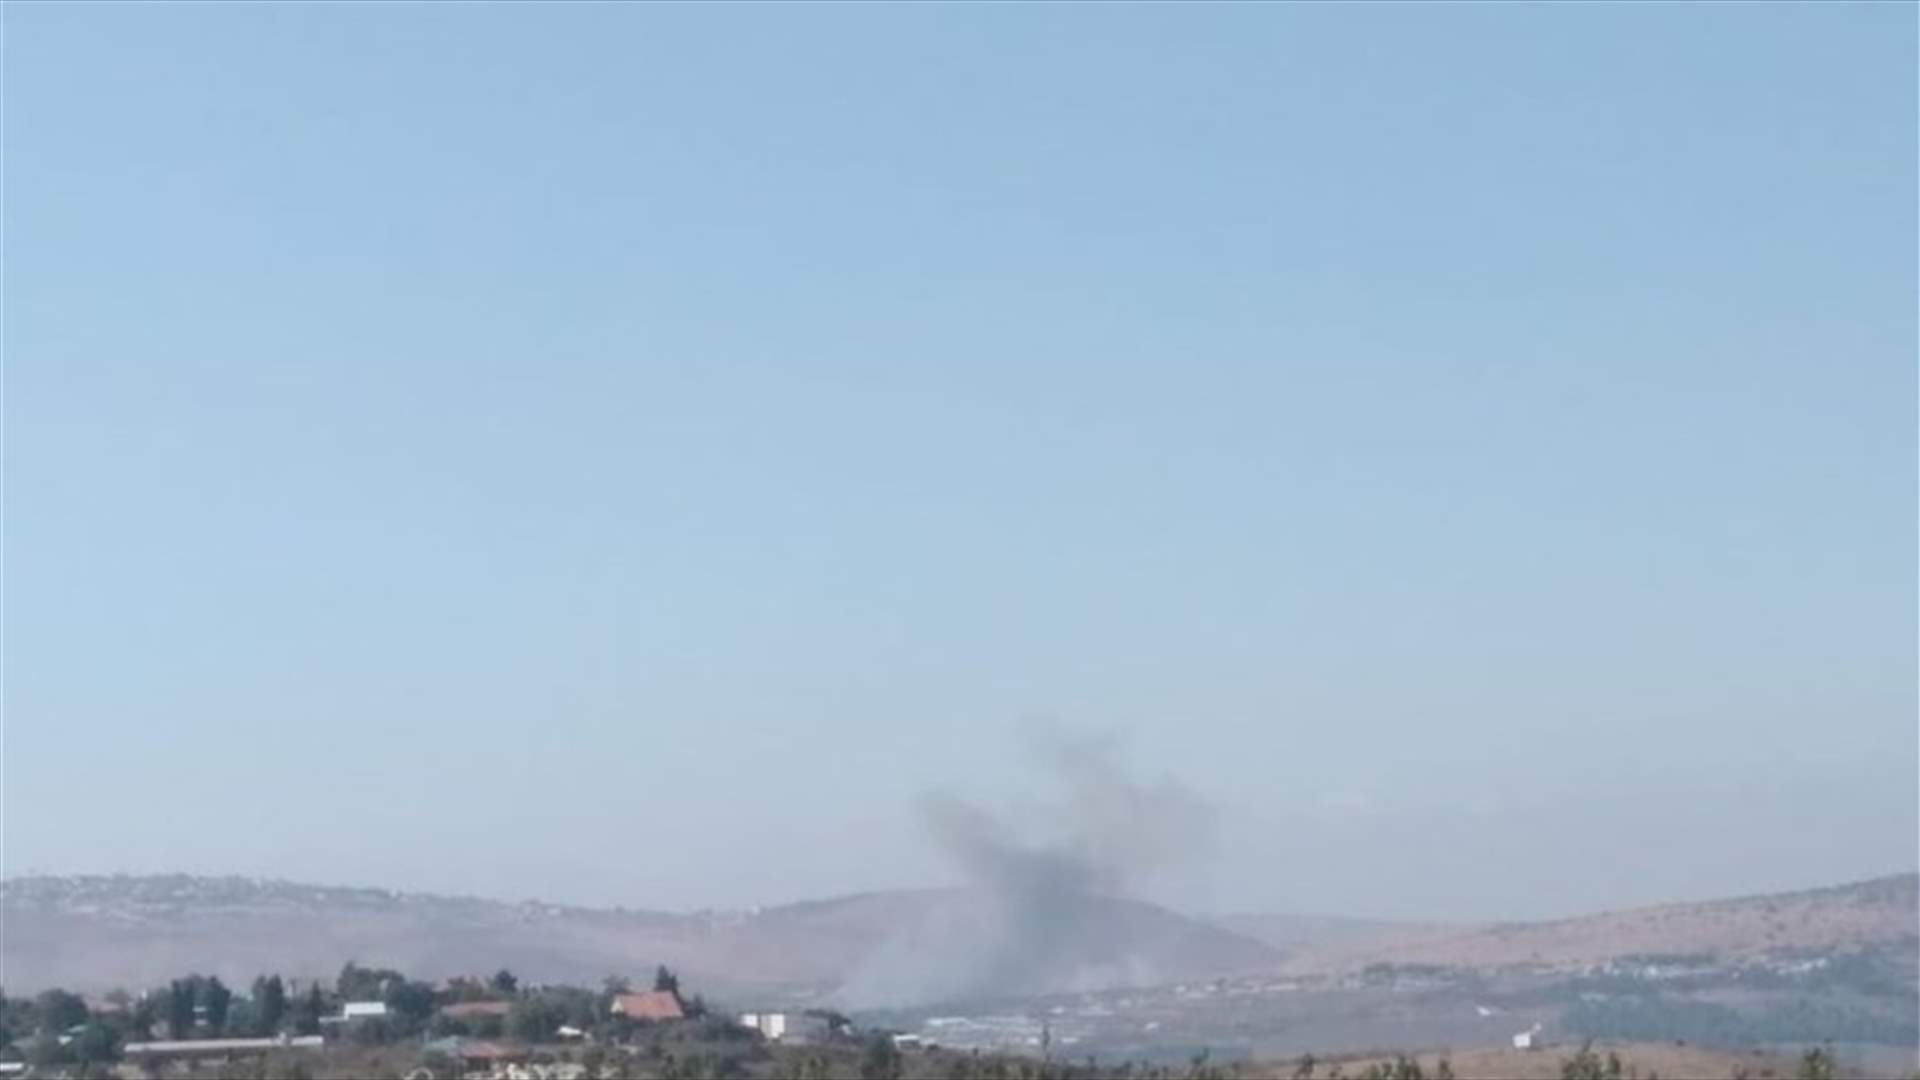 فيديو من موقع سقوط الصاروخ في إسرائيل...